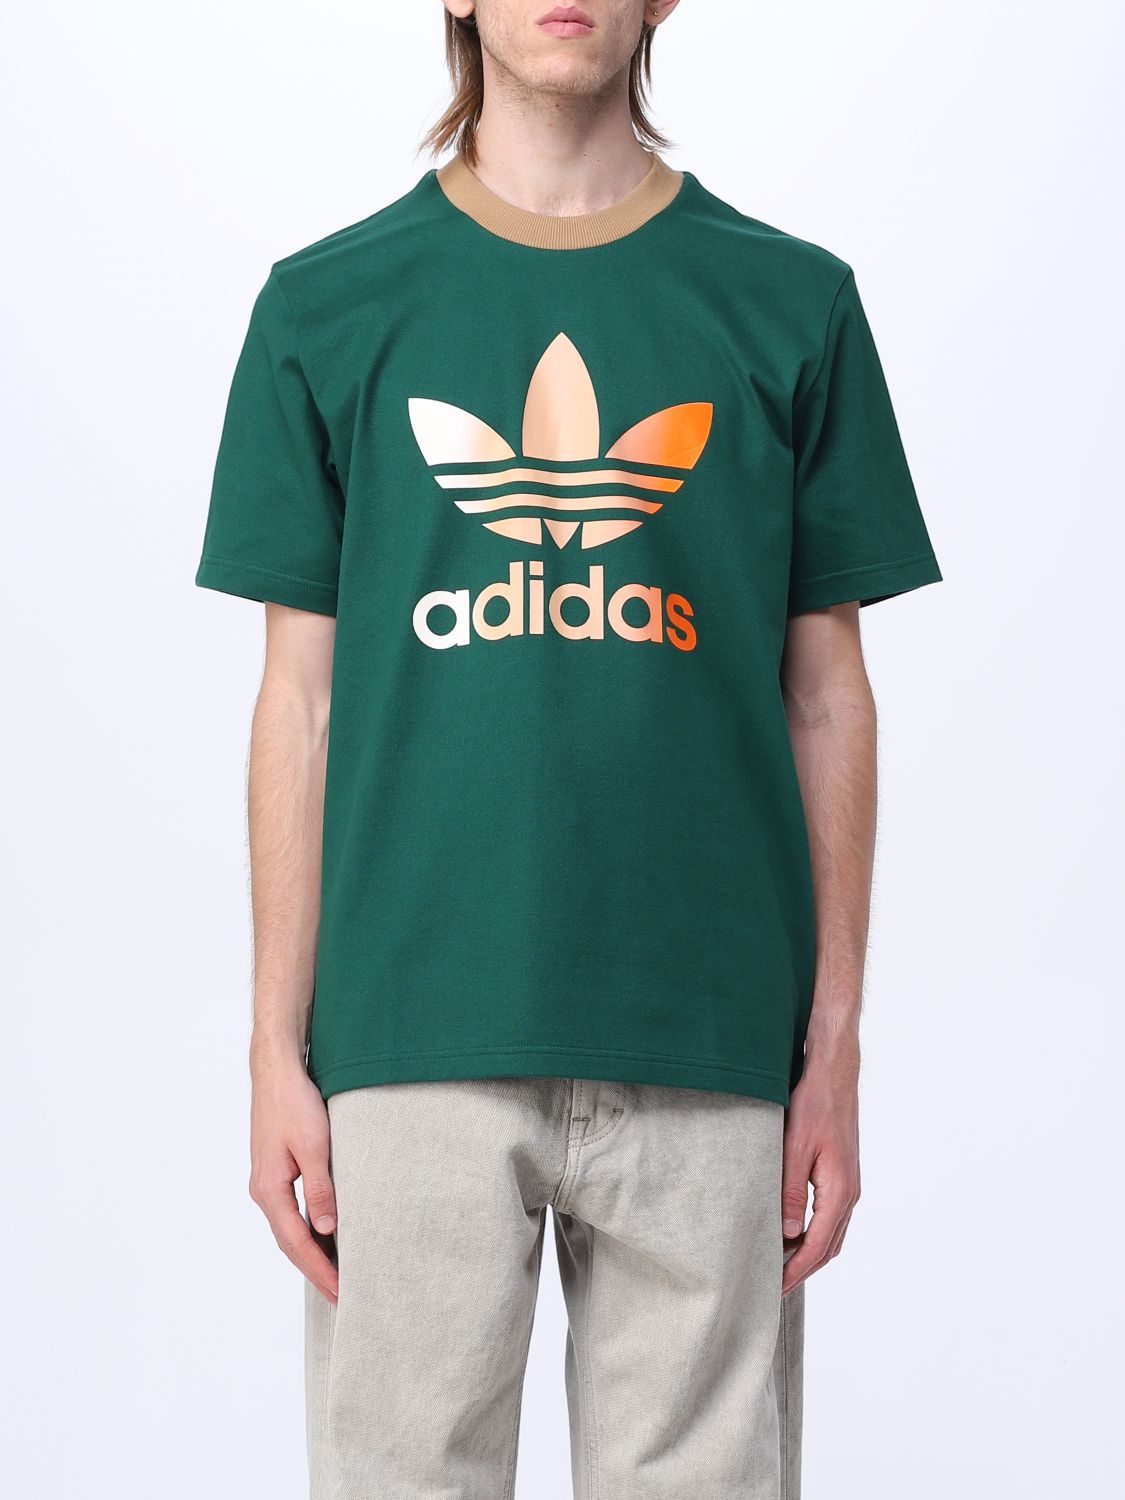 Arrangement styrte Gurgle ADIDAS ORIGINALS: t-shirt for man - Green | Adidas Originals t-shirt IP6969  online on GIGLIO.COM